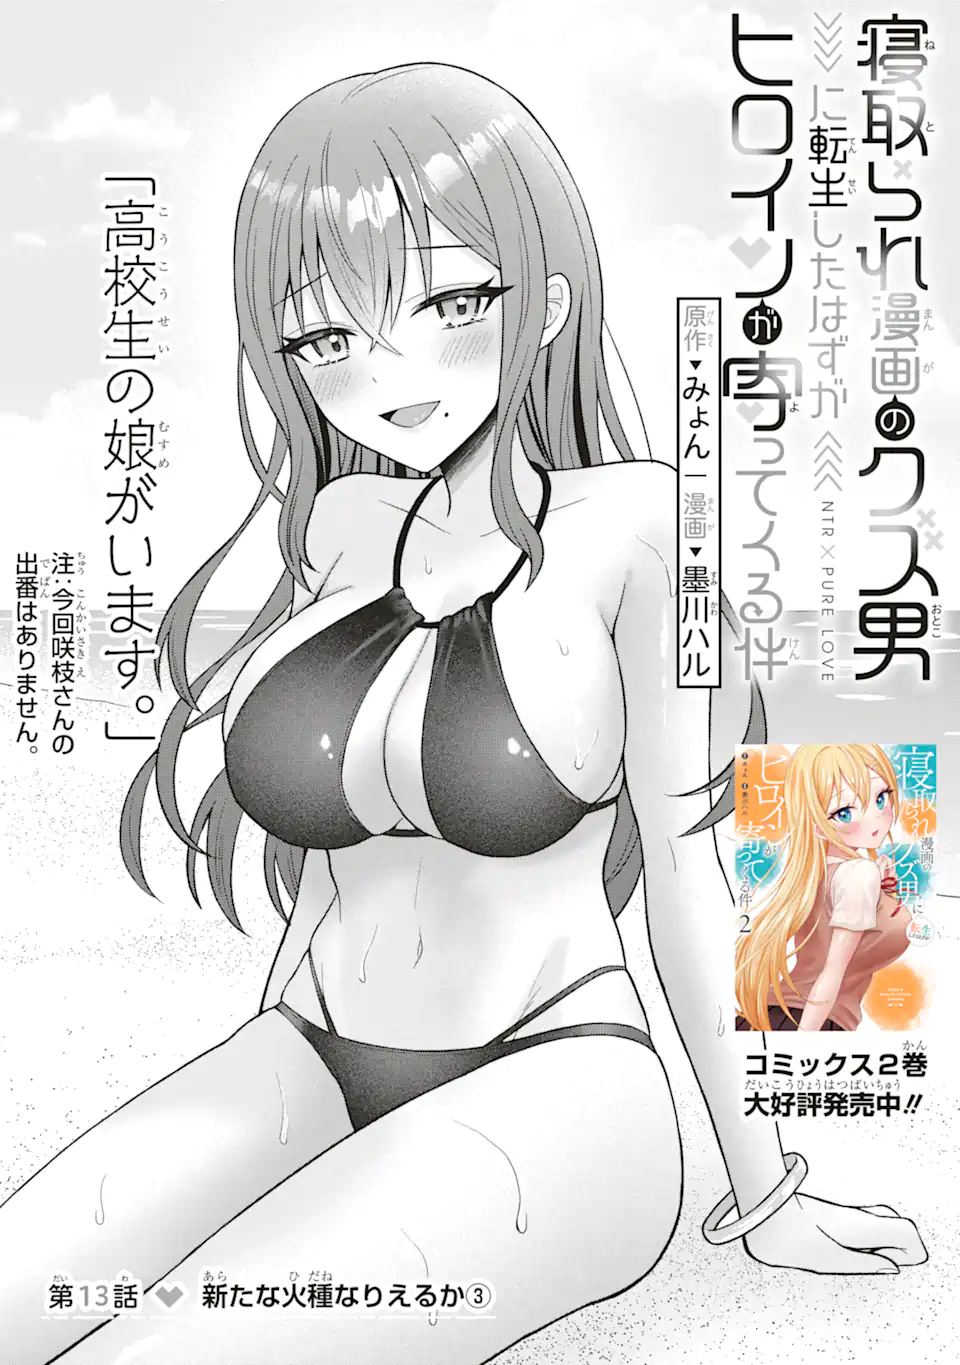 Netorare Manga no Kuzu Otoko ni Tensei Shita Hazu ga Heroine ga Yottekuru Ken - Chapter 13.1 - Page 3